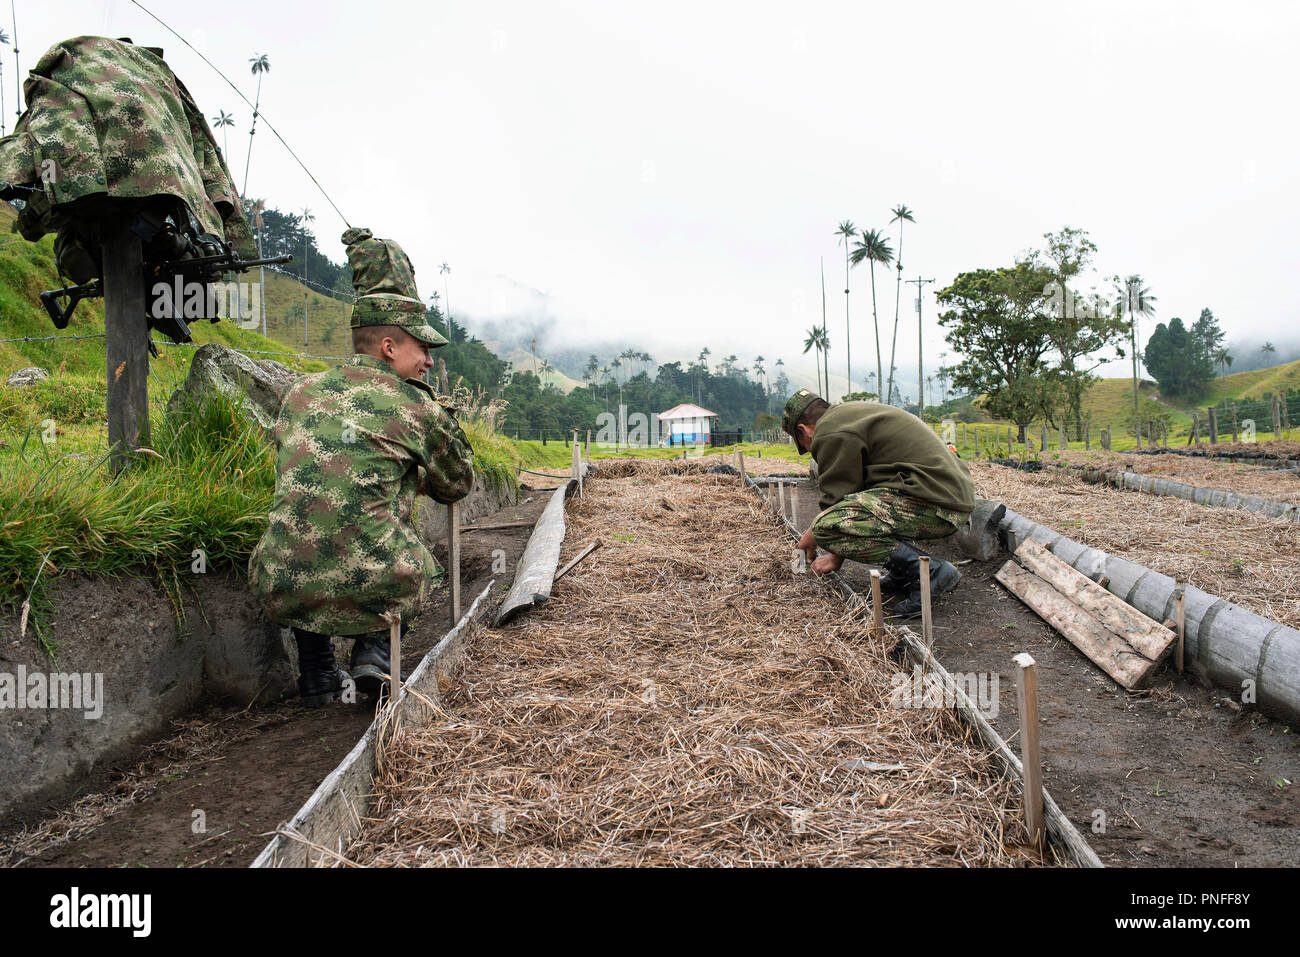 4/10 ensayo fotográfico: cubriendo el plantado las semillas para su protección. El Ejército Nacional trabajando en la plantación de palma de cera en el Valle de Cocora, Colombia. 13 Sep 2018 Foto de stock